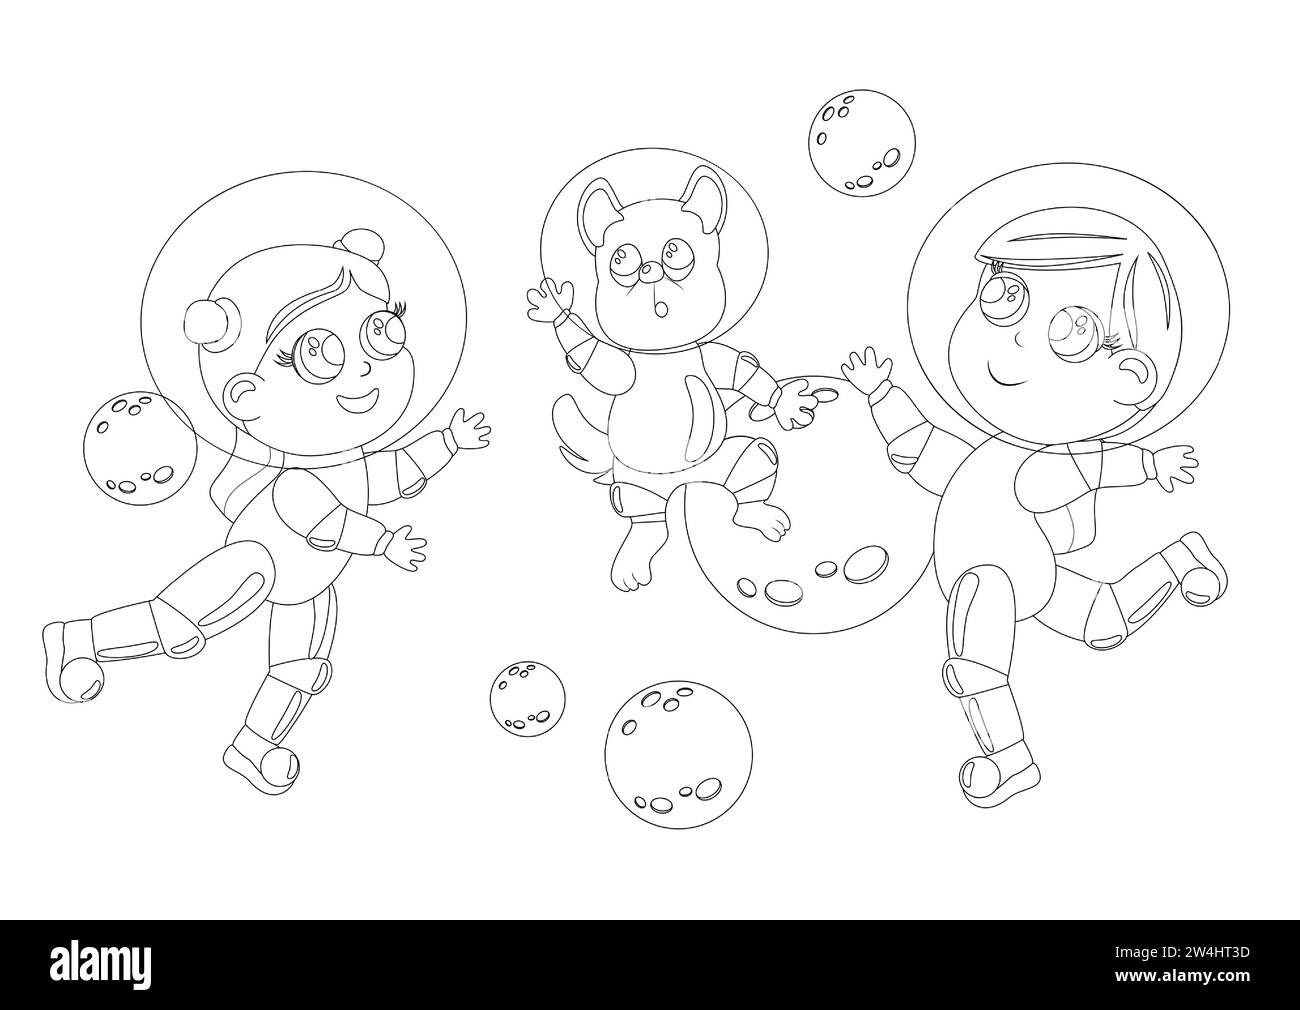 Coloriage. Deux filles aux grands yeux et un chien sont habillés d'un costume d'astronaute et d'un casque. Les enfants sont heureux et volent dans l'espace. Cartoon Sty Illustration de Vecteur